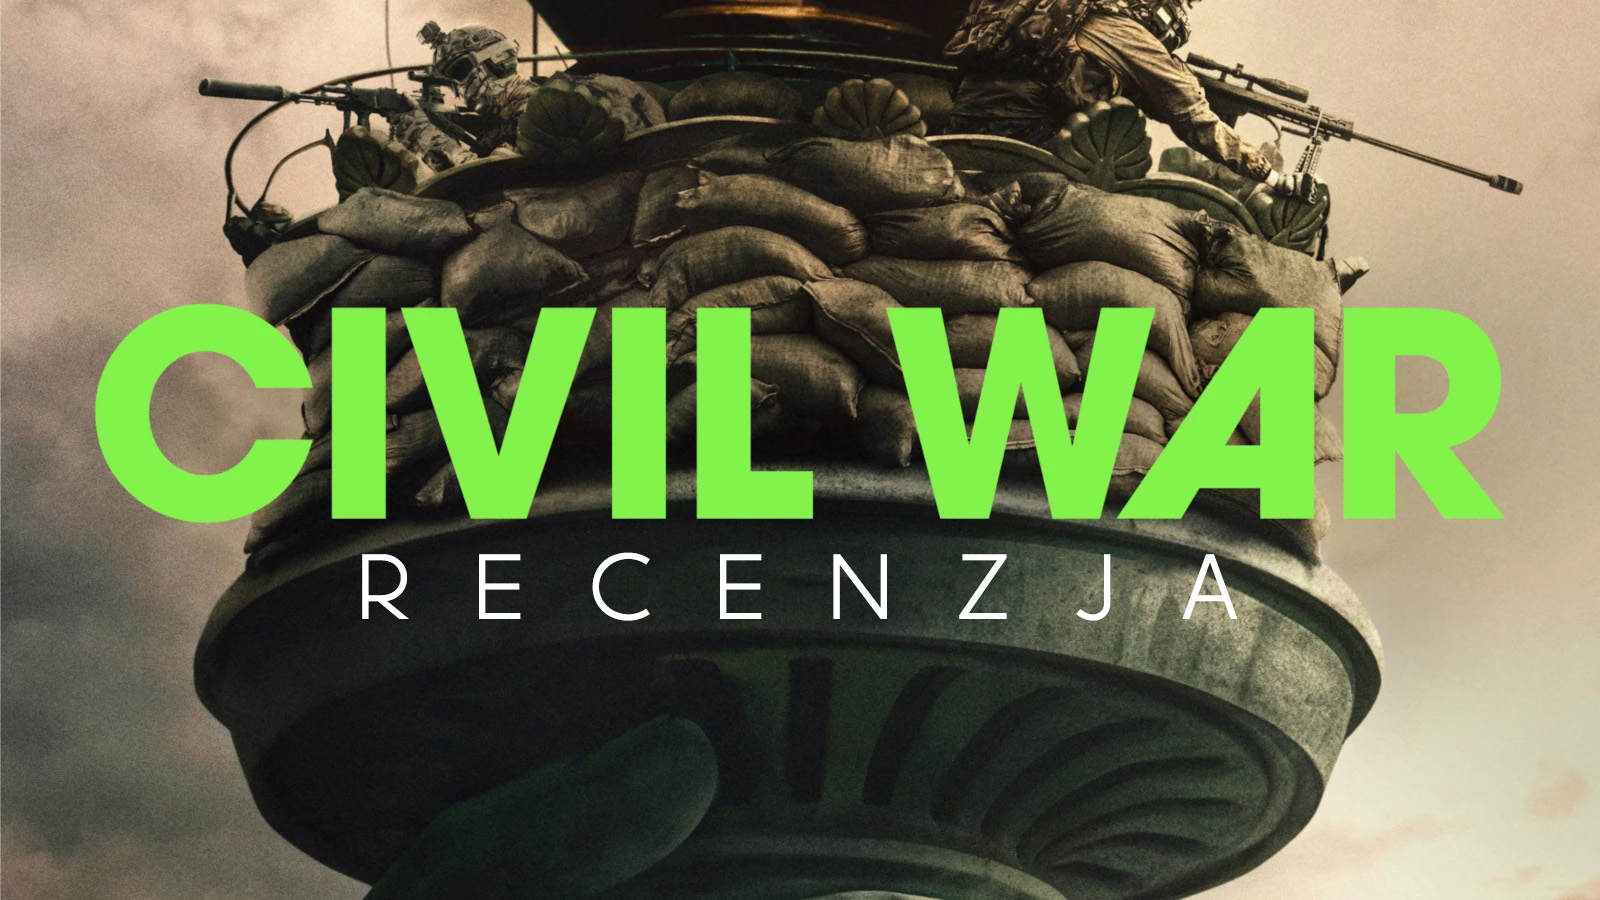 Recenzja filmu "Civil War" od A24. Poczuj na sobie piekło wojny - to trzeba zobaczyć w IMAX!